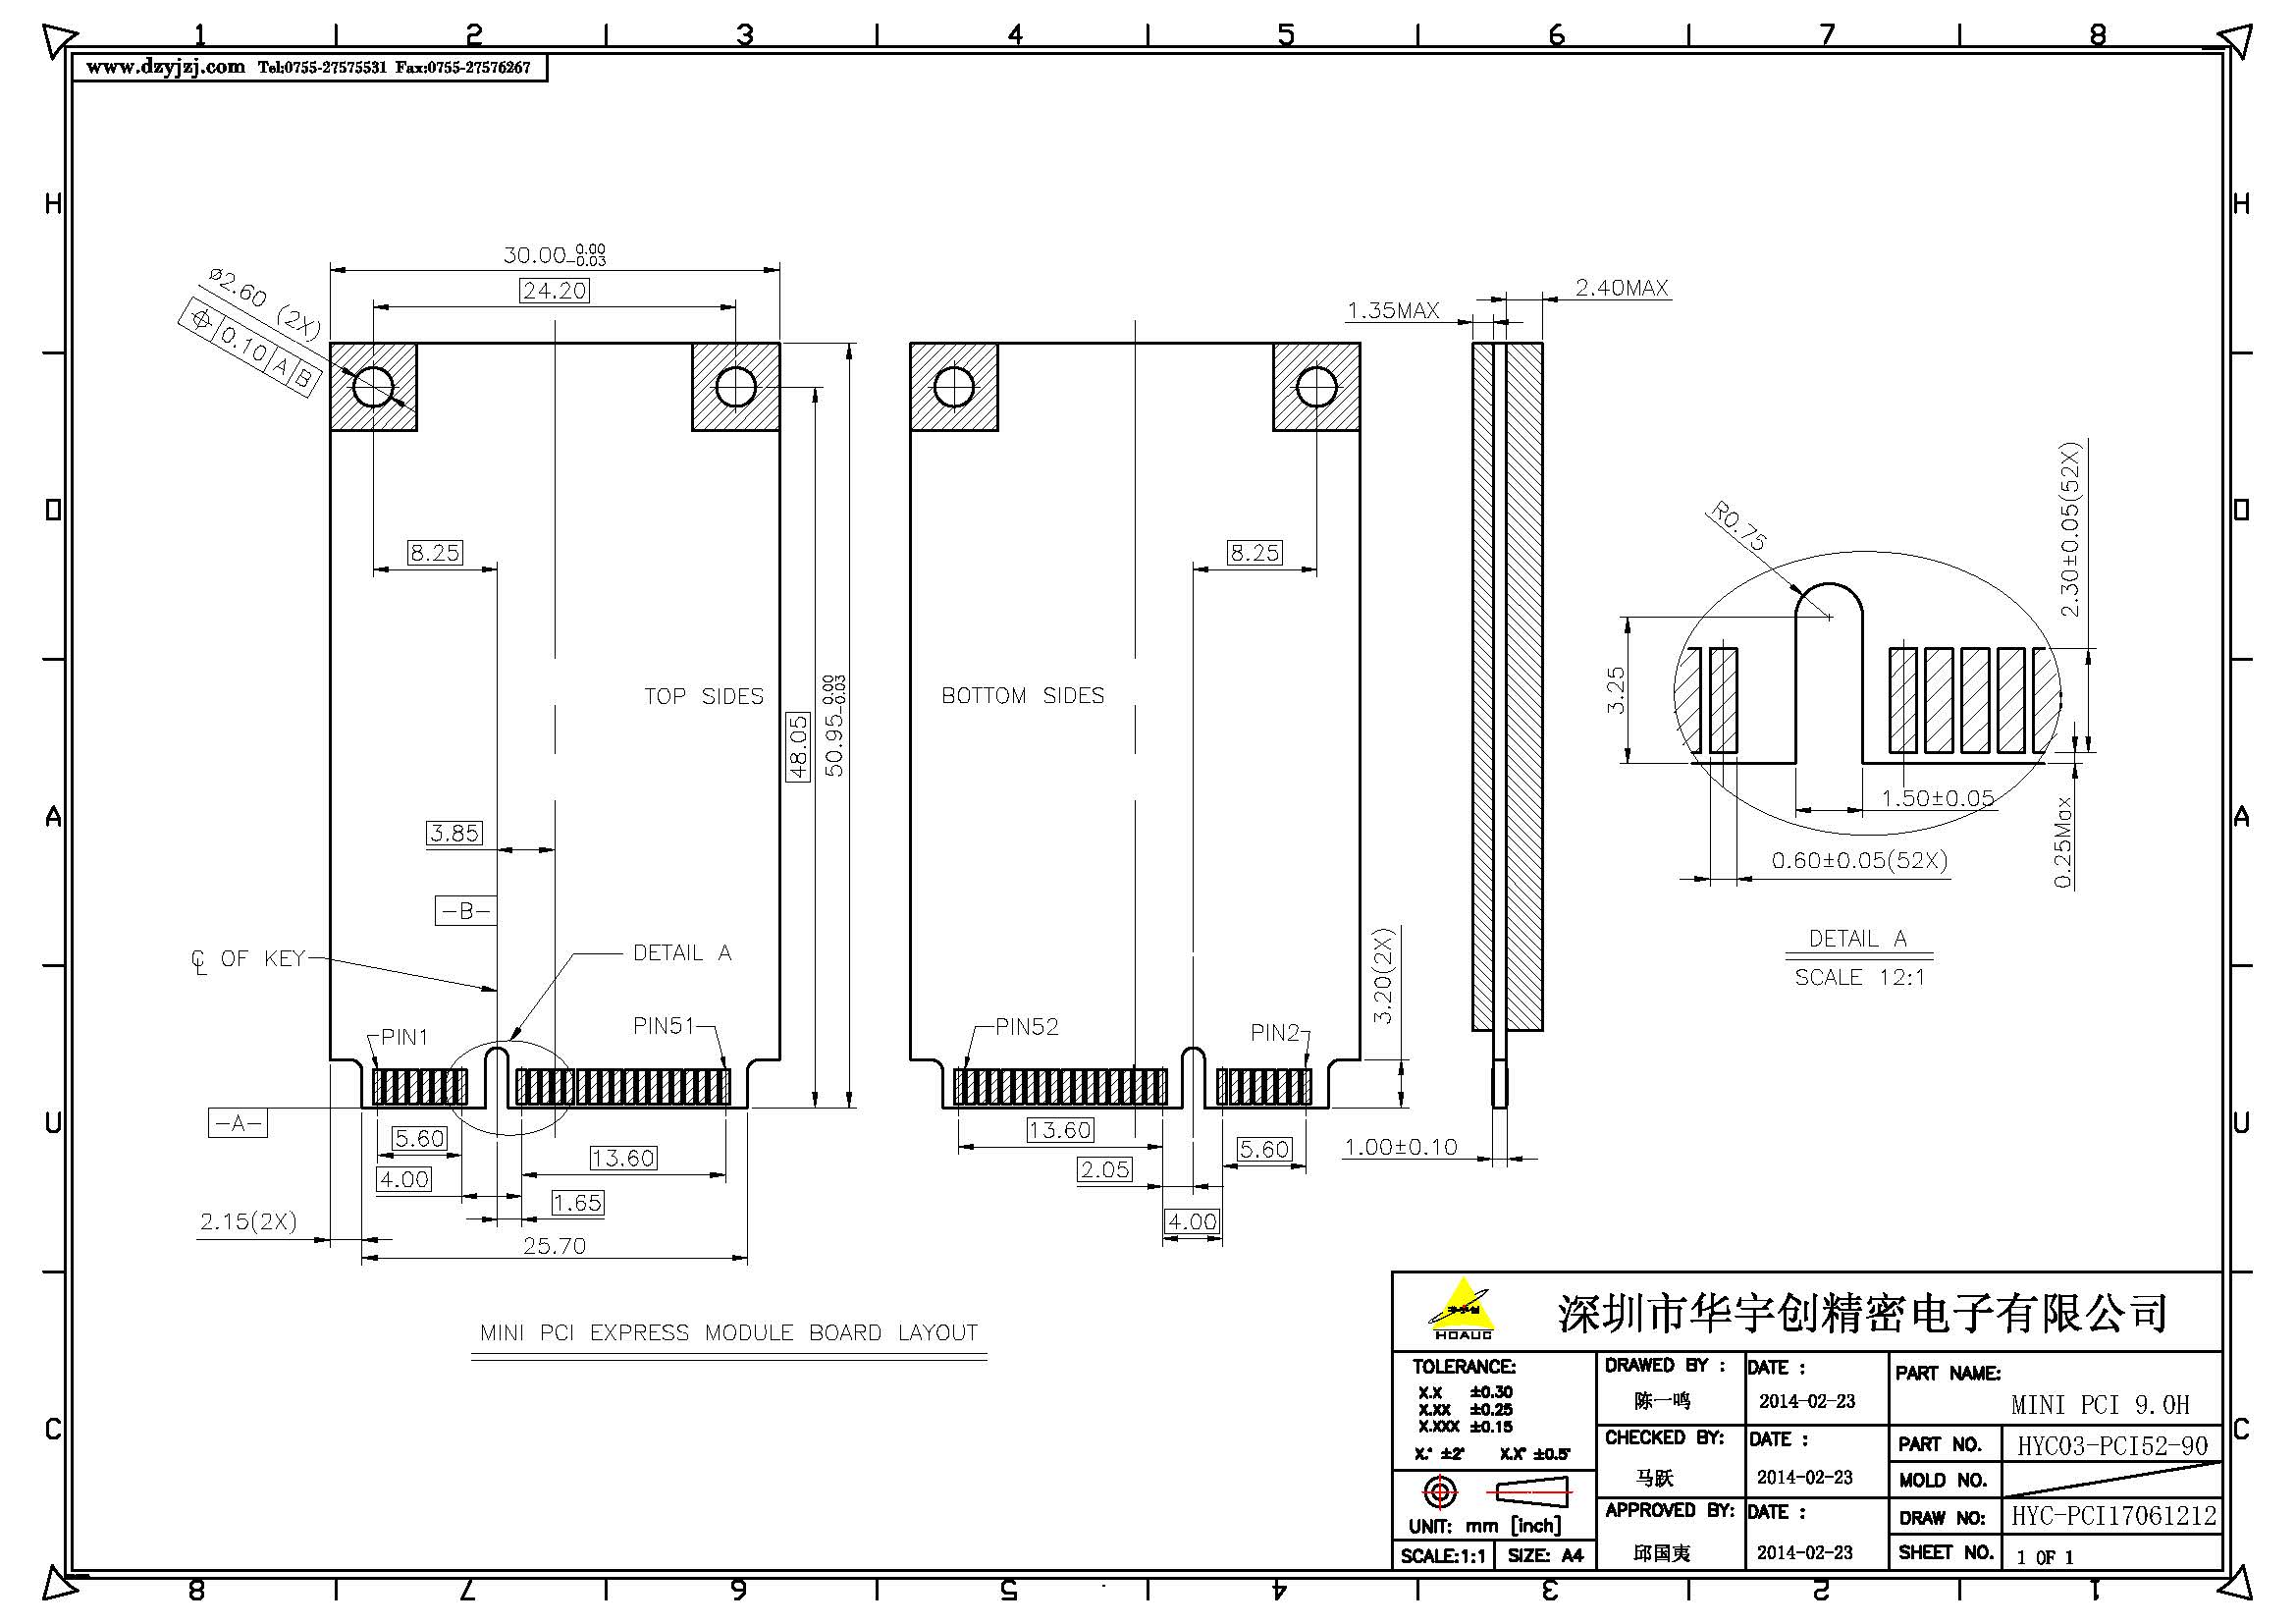 MINI PCI 9.0H产品图产品图_页面_3.jpg